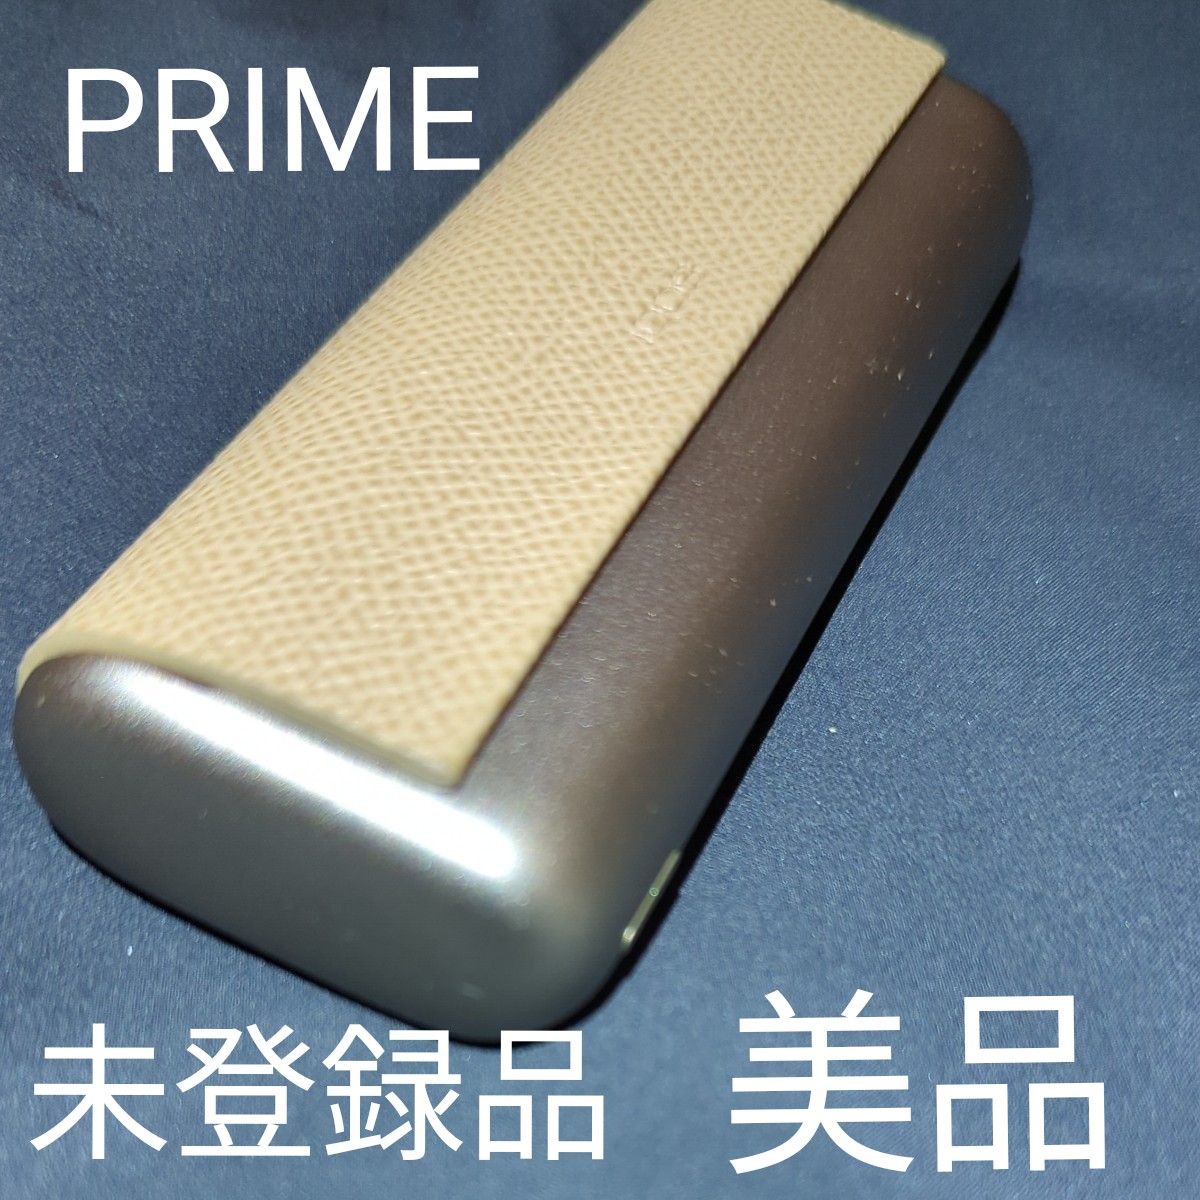 【未登録品】【登録可能】美品 アイコス イルマ プライム ILUMA PRIME ゴールドカーキ 最上位モデル 